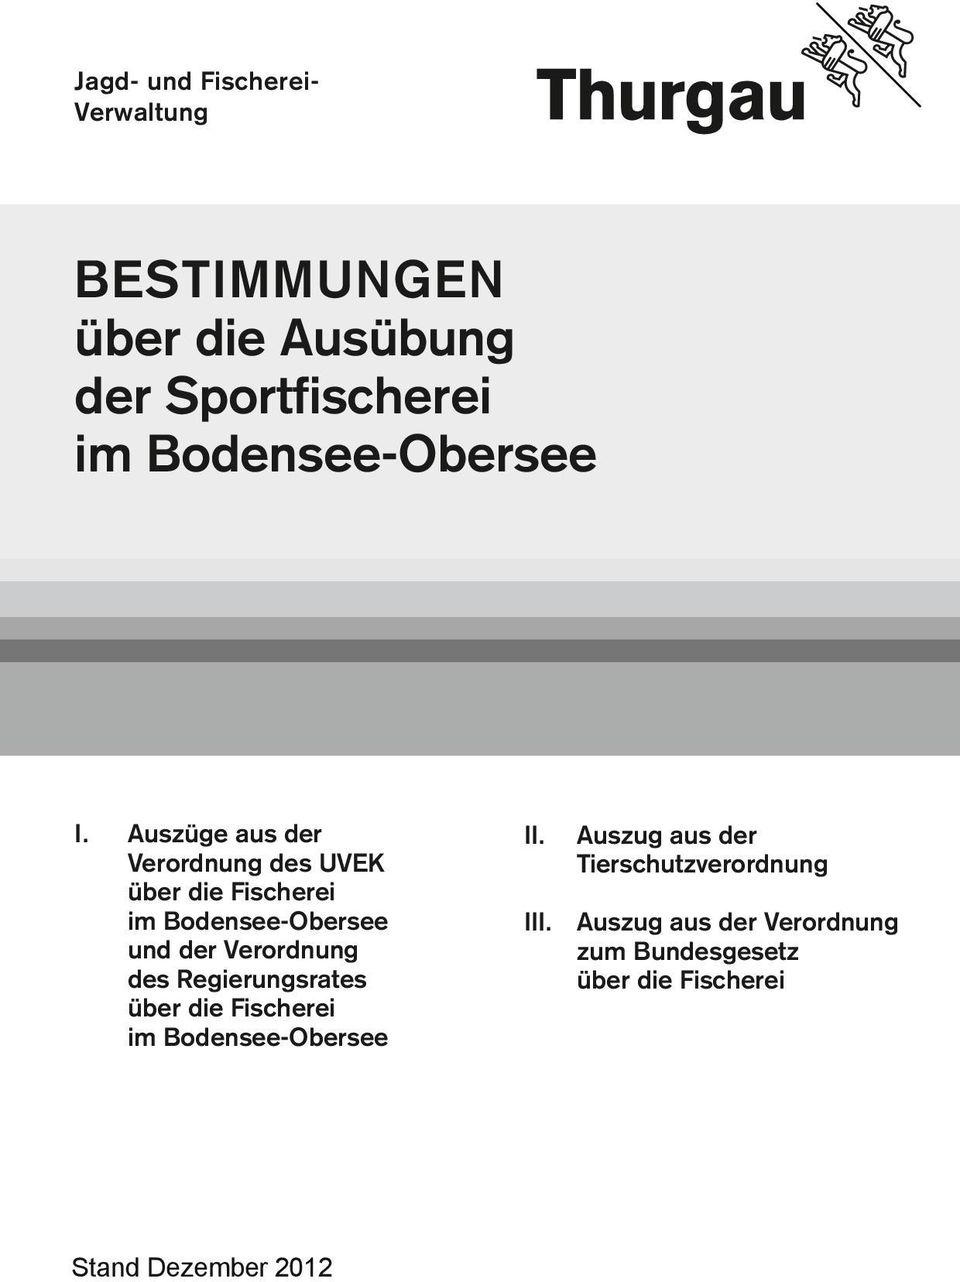 Auszüge aus der Verordnung des UVEK über die Fischerei im Bodensee-Obersee und der Verordnung